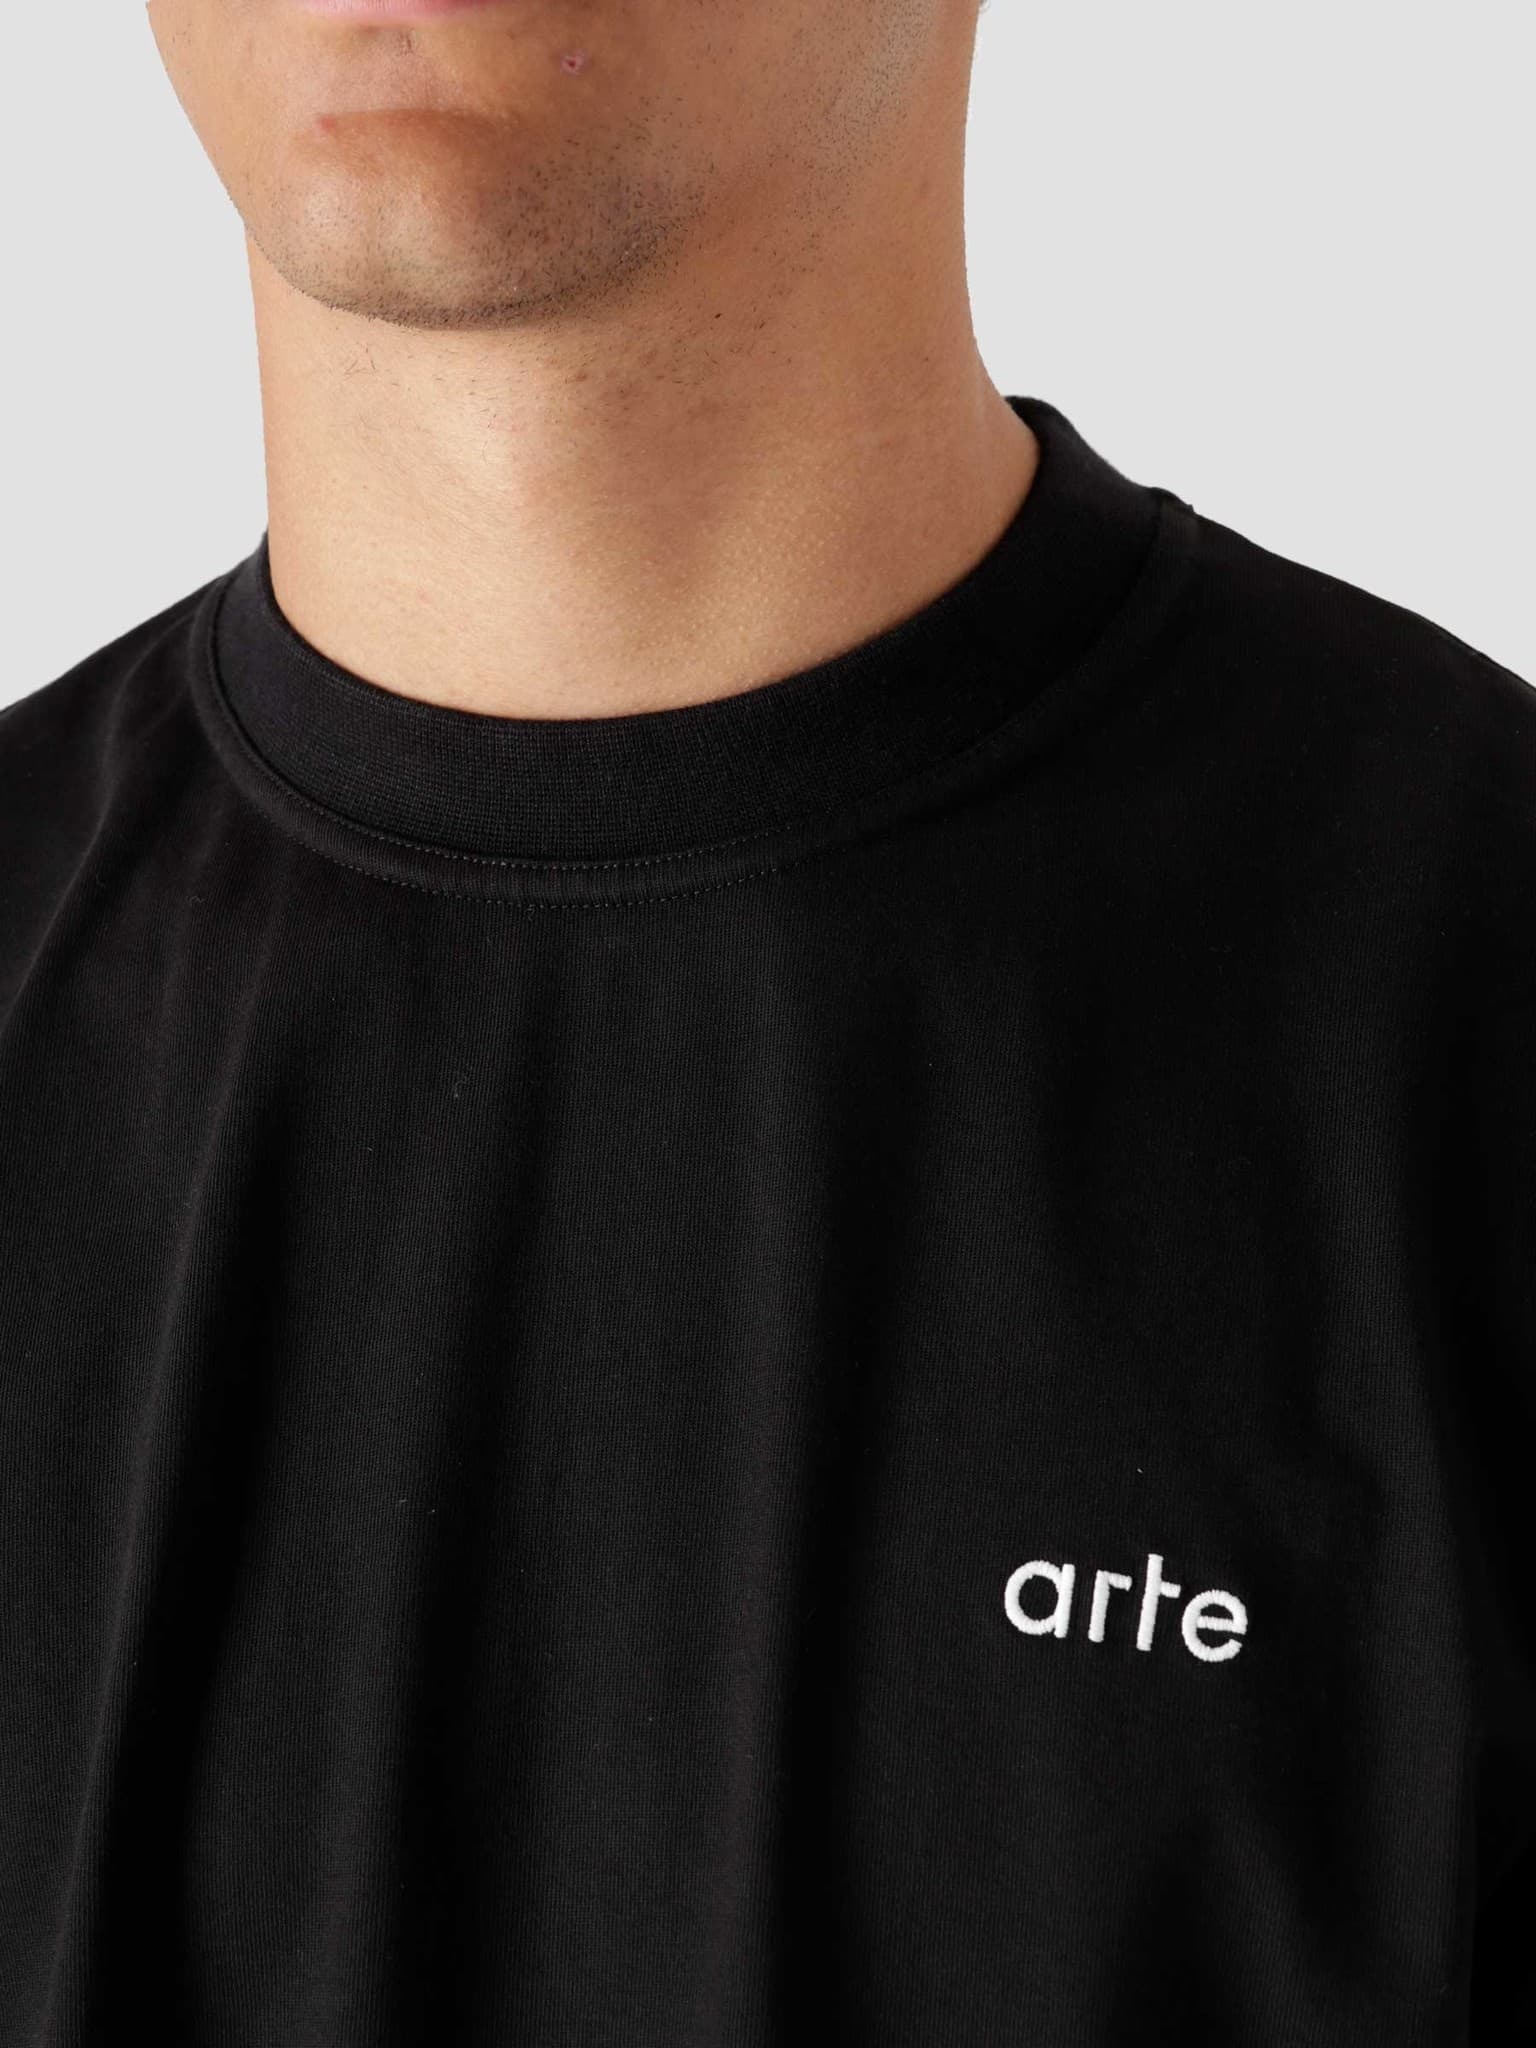 Arte Antwerp Tissot Back Roses T-Shirt Black - Freshcotton